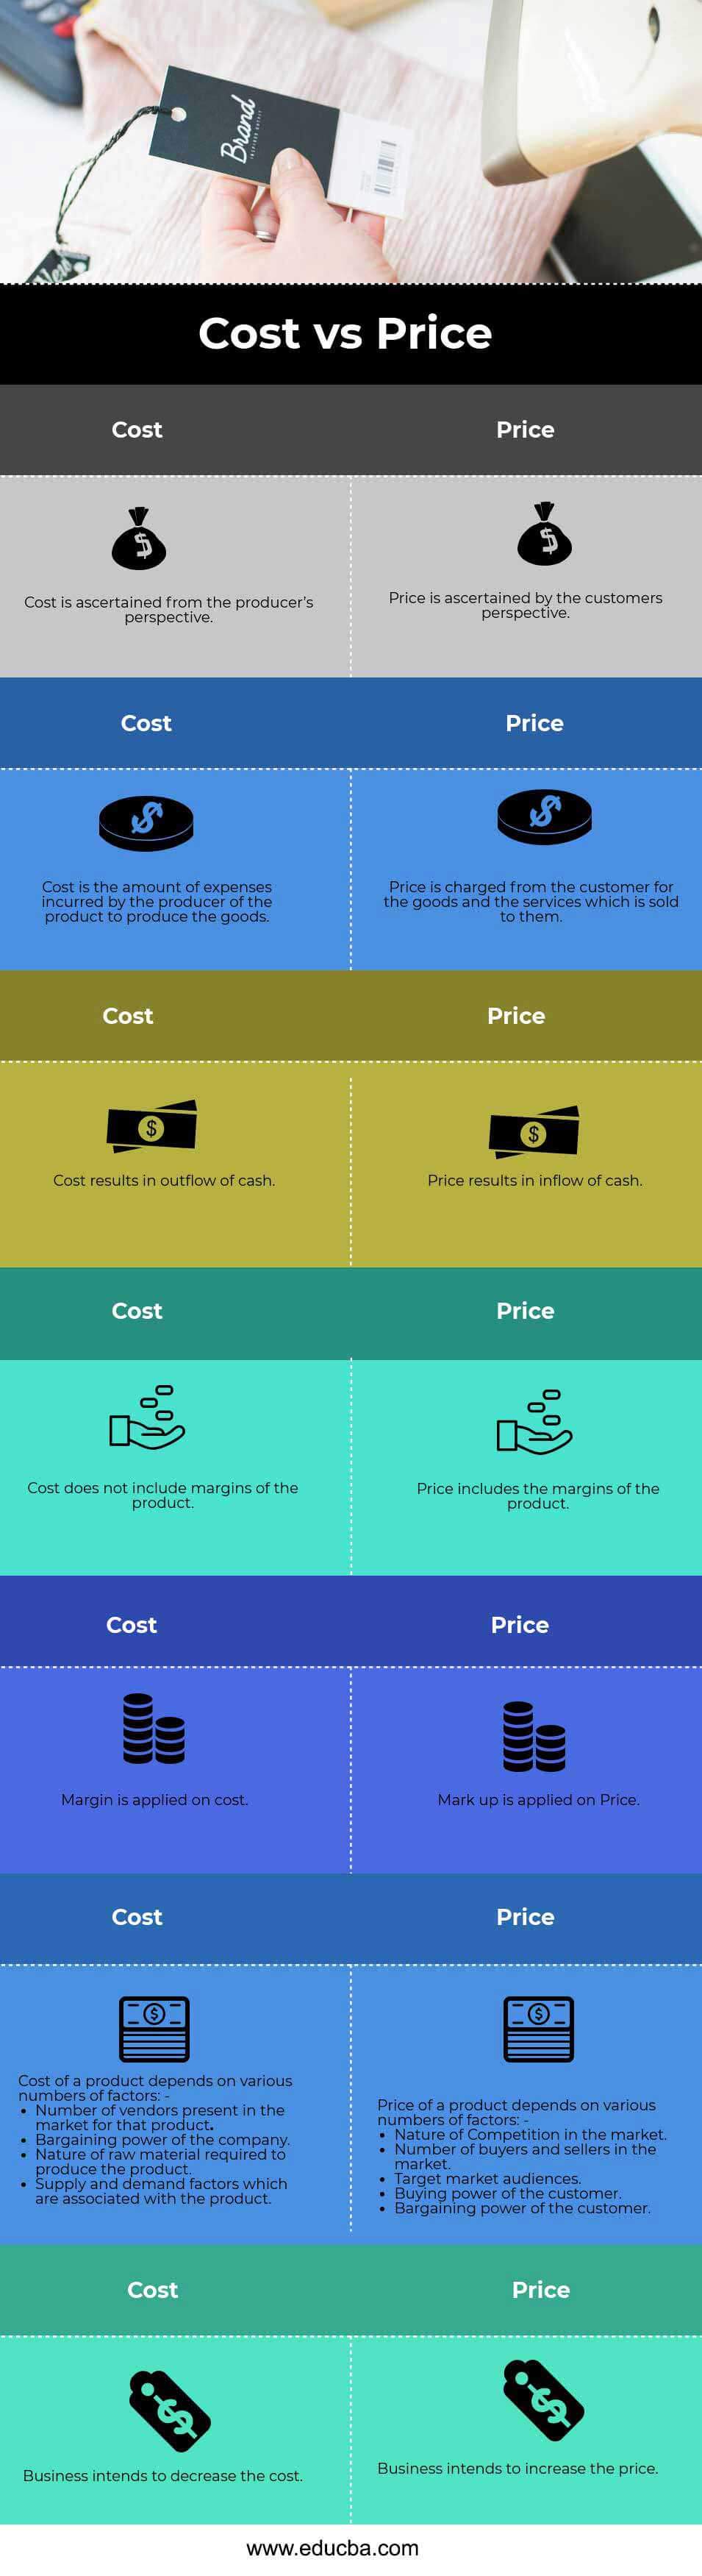 Costo versus precio